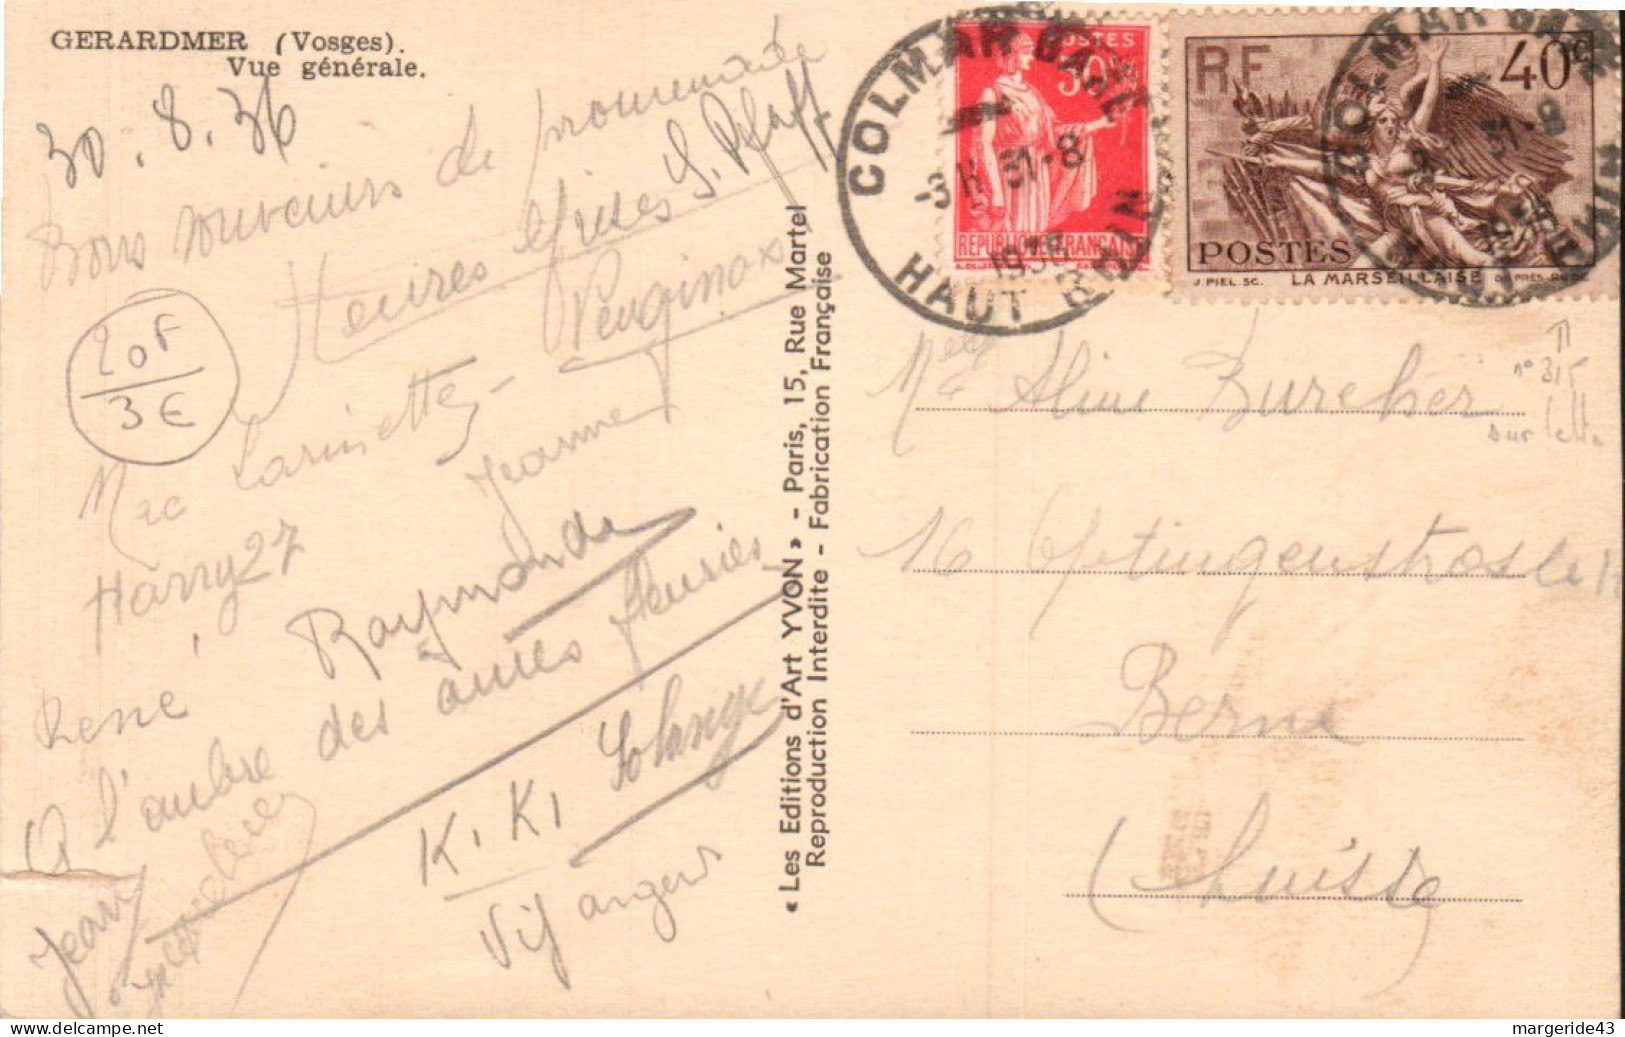 AFFRANCHISSEMENT COMPOSE SUR CARTE DE COLMAR GARE 1936 - Tarifs Postaux